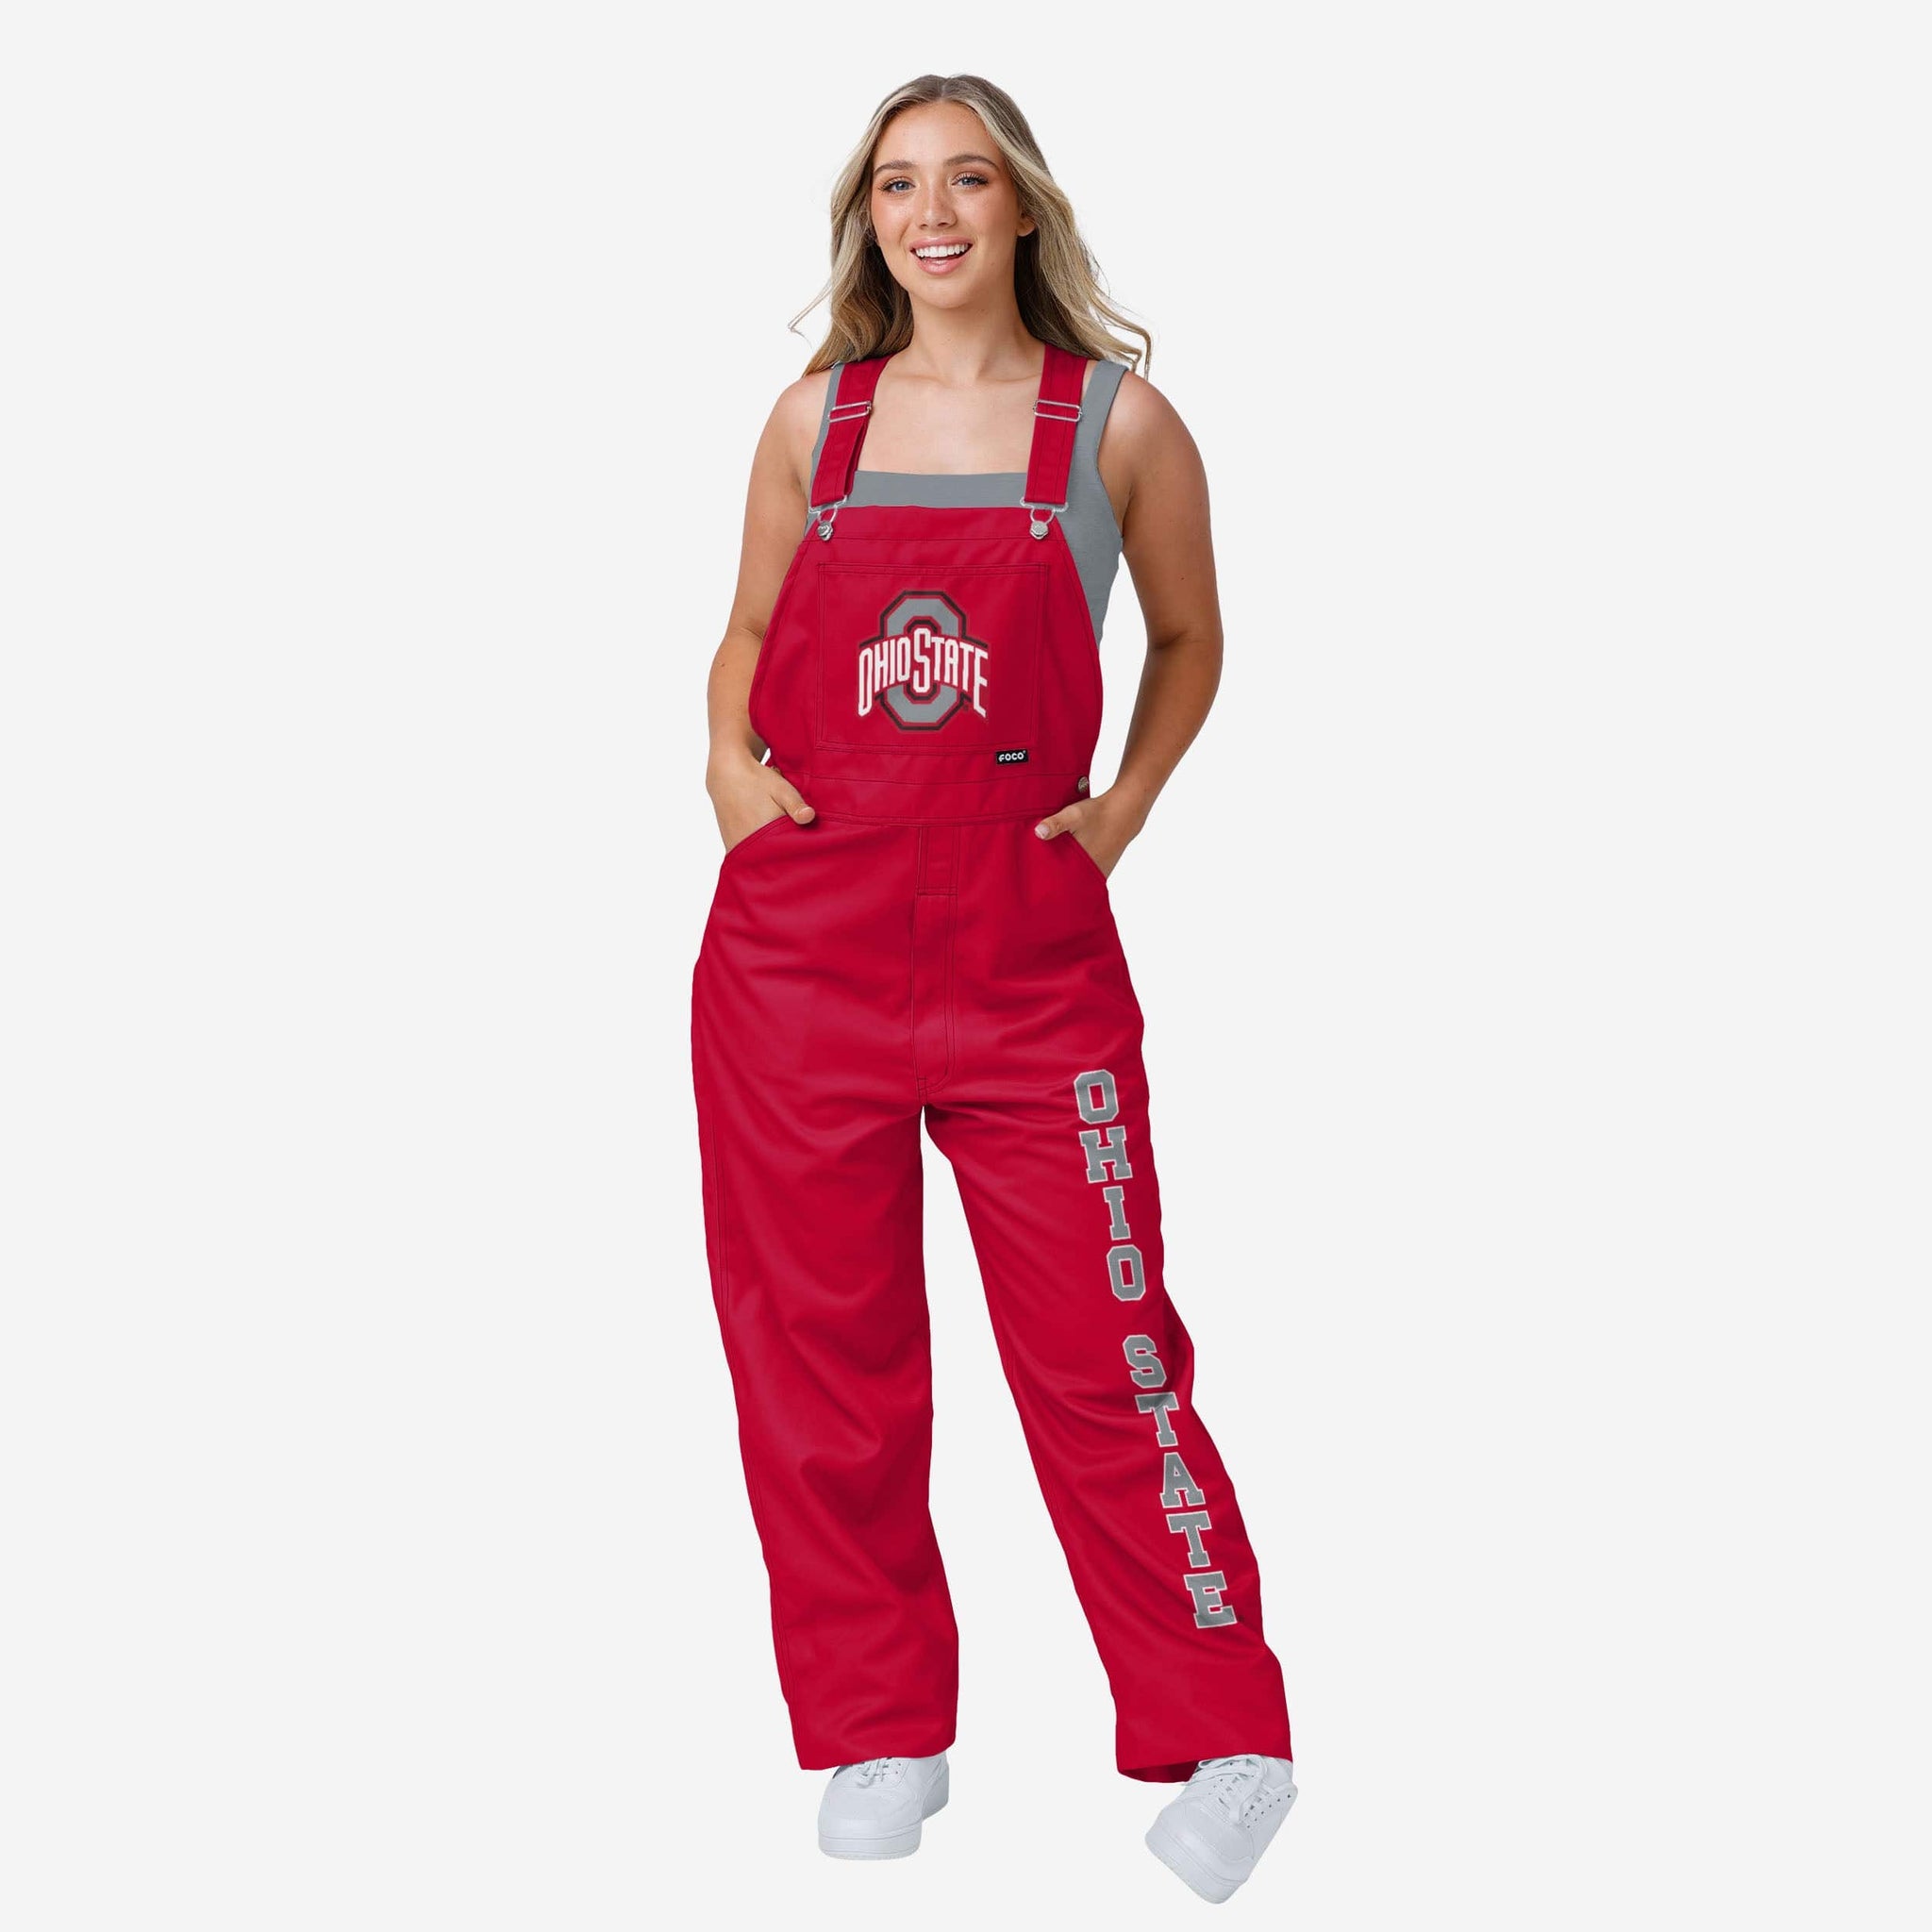 Ohio State Buckeyes Womens Big Logo Bib Overalls